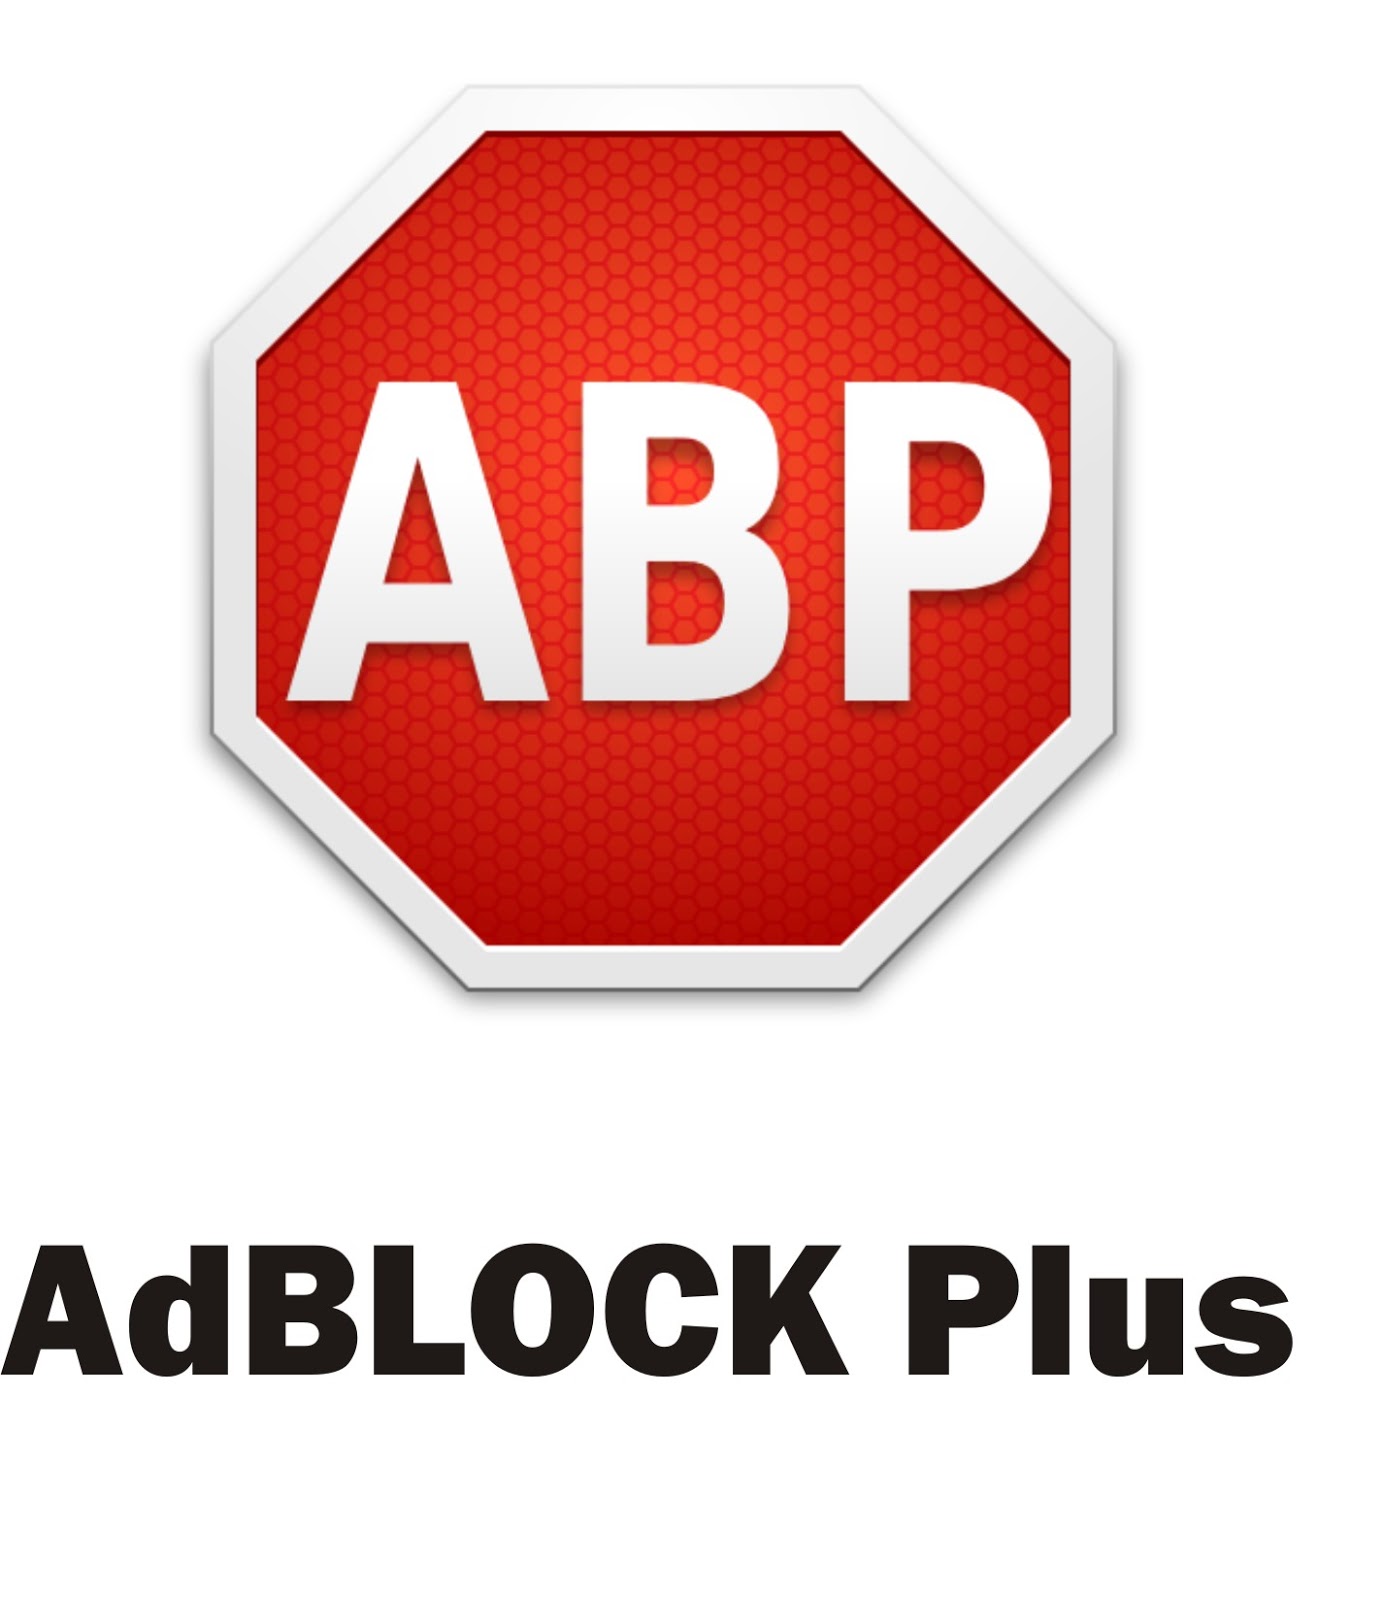 Adblock com. Блокировка рекламы. ADBLOCK. ADBLOCK Plus. Лучший блокировщик рекламы.